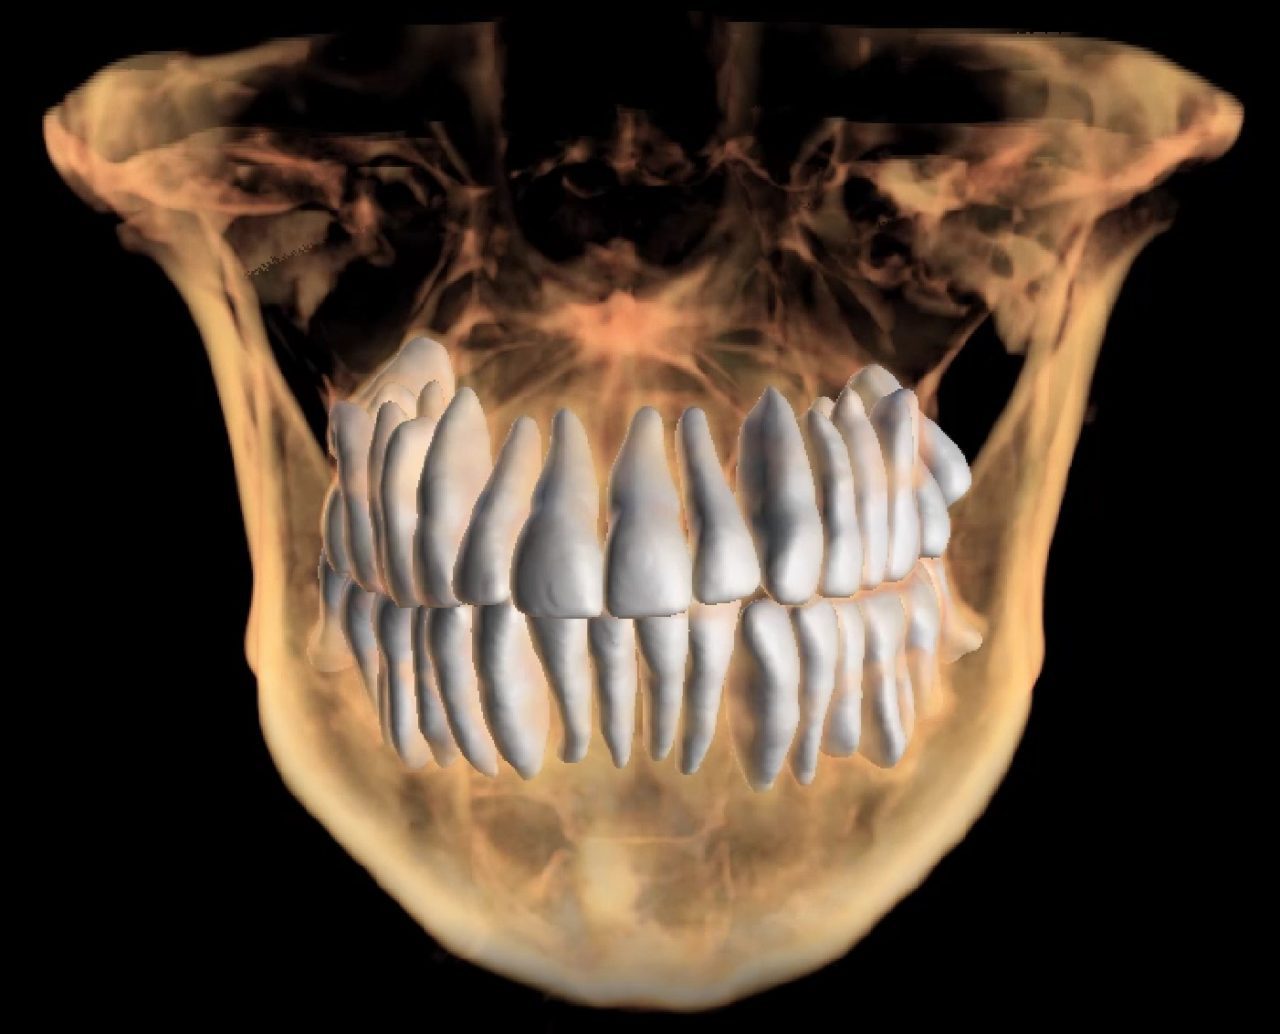 Tomografia de dientes y hueso.